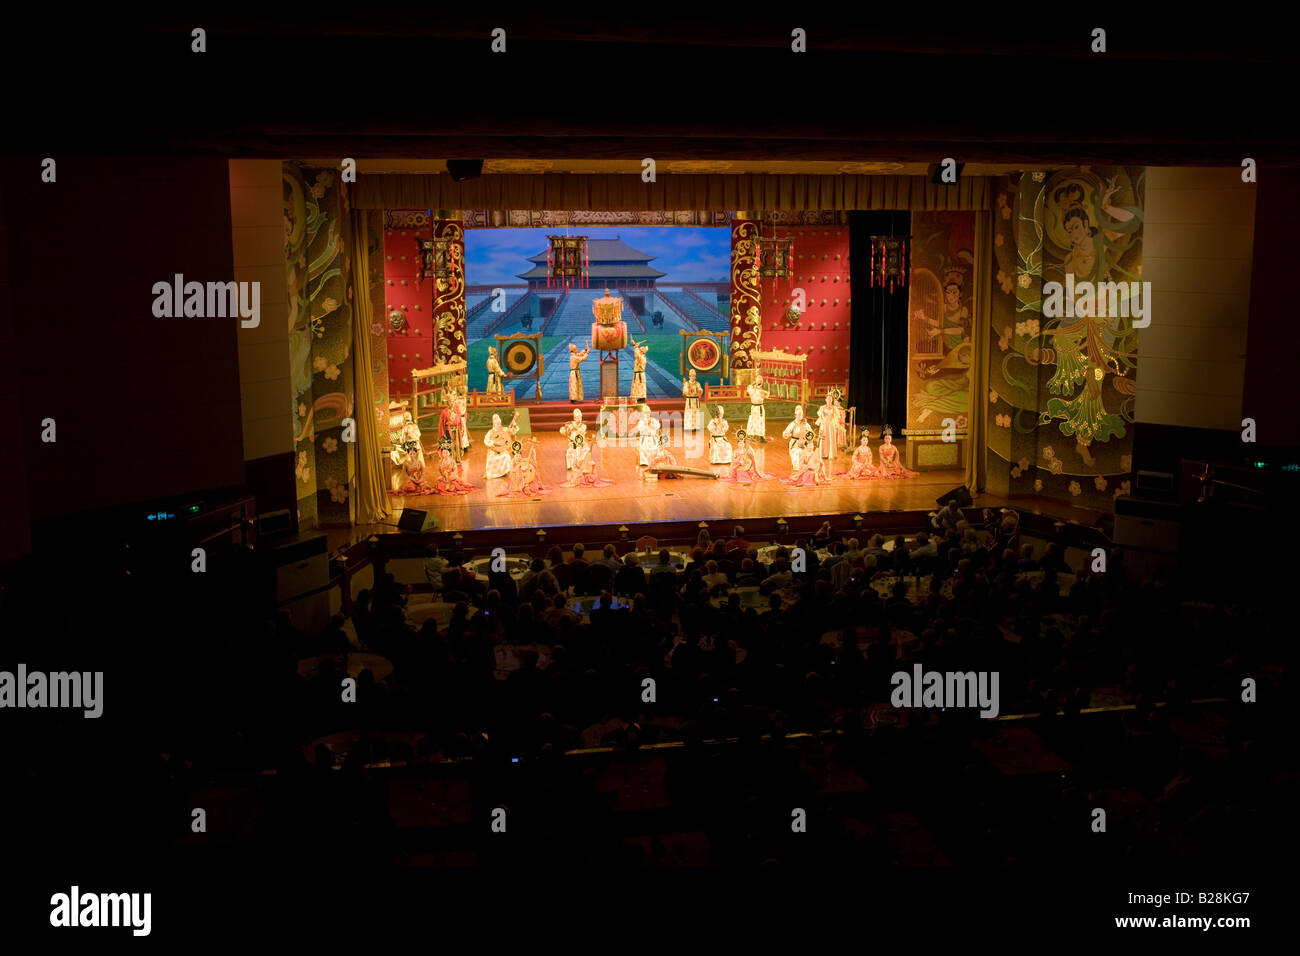 Dans l'exécution de danseurs spectacle de danse Tang Grand Opera House de Shaanxi Xian Chine Banque D'Images